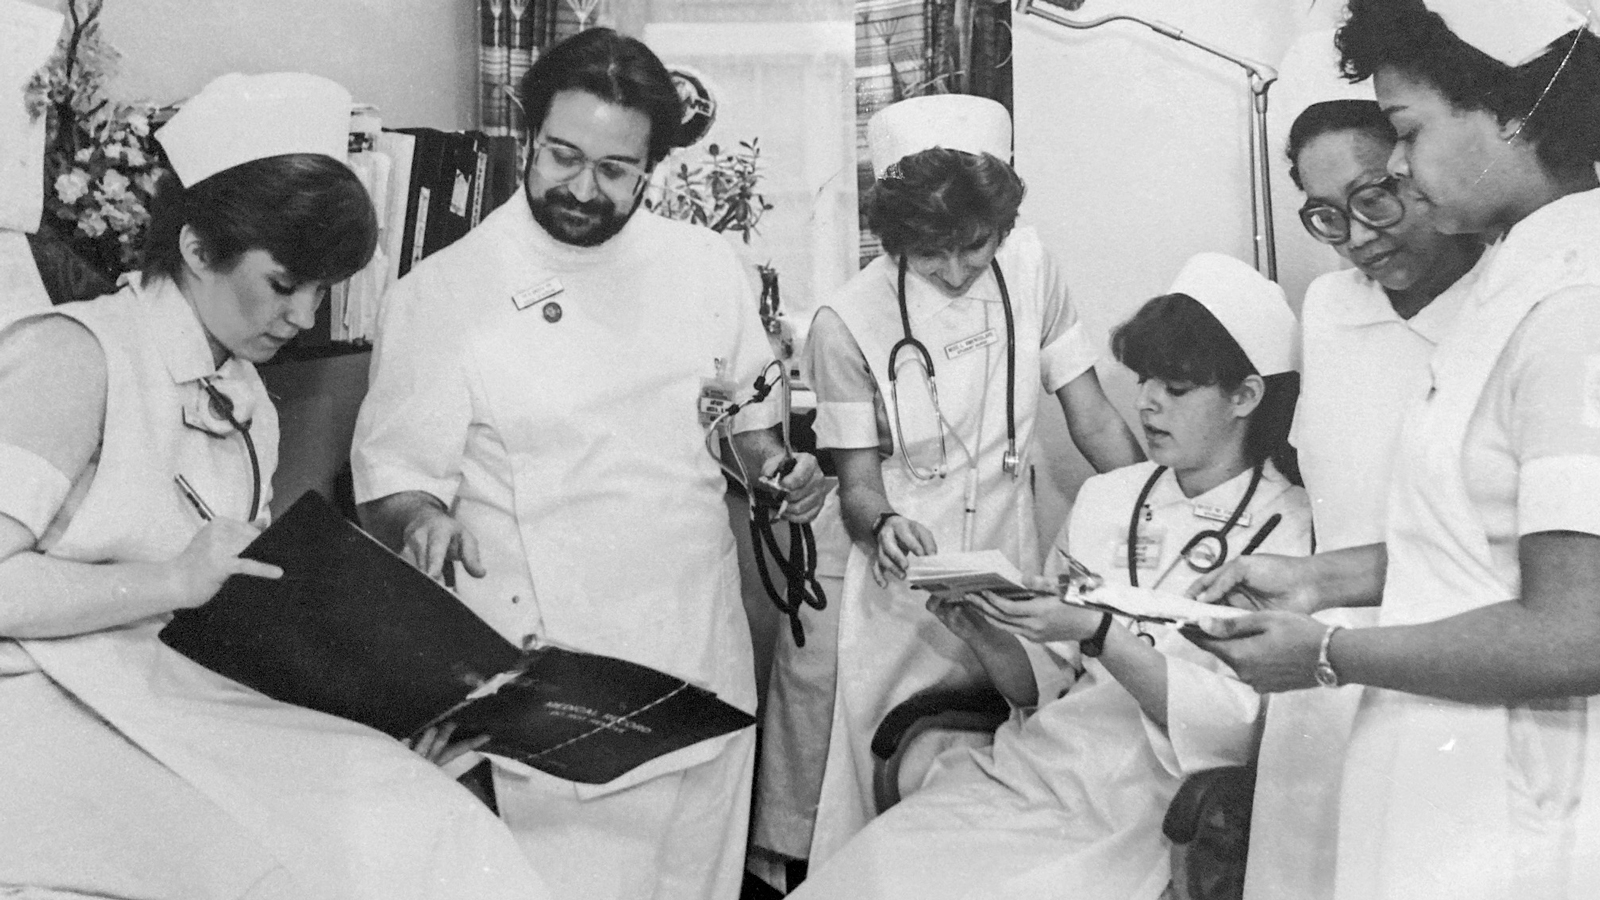 Student nurses at work, 1971